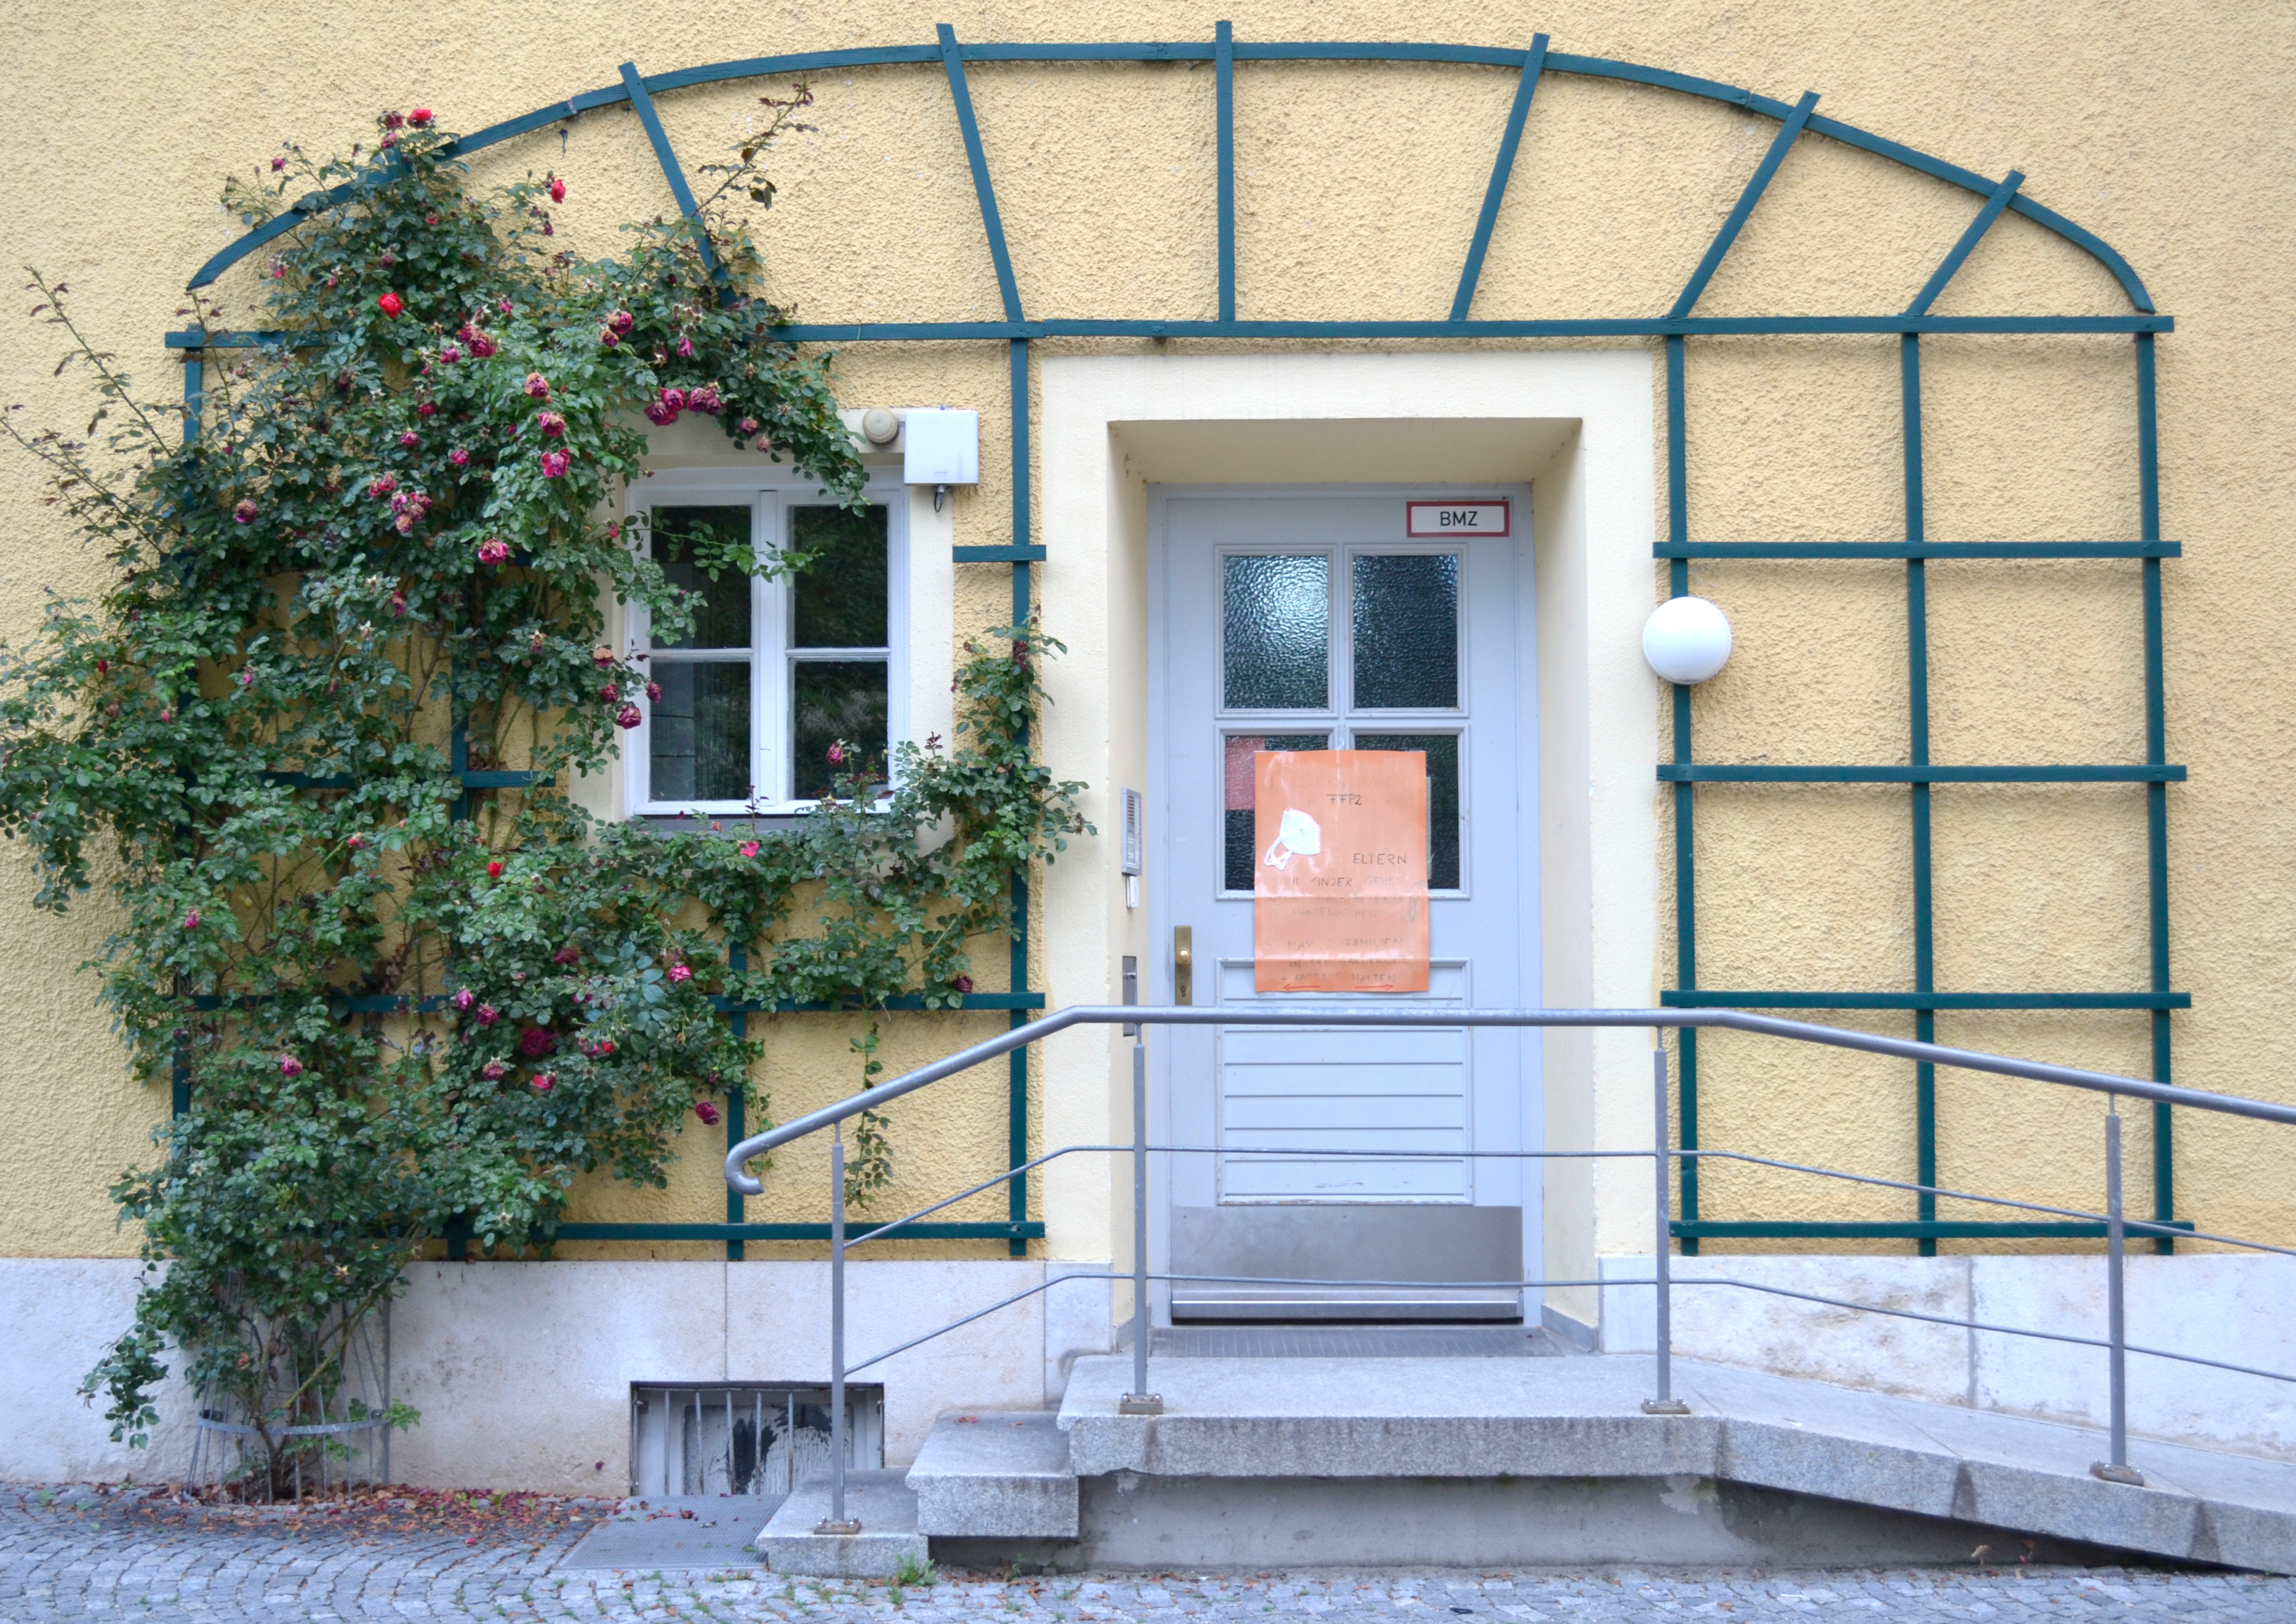 Vor dem Eingang eines gelben Hauses, das mit Efeu bewachsen ist, sind sowohl drei Stufen als auch gegenüber eine Rampe.